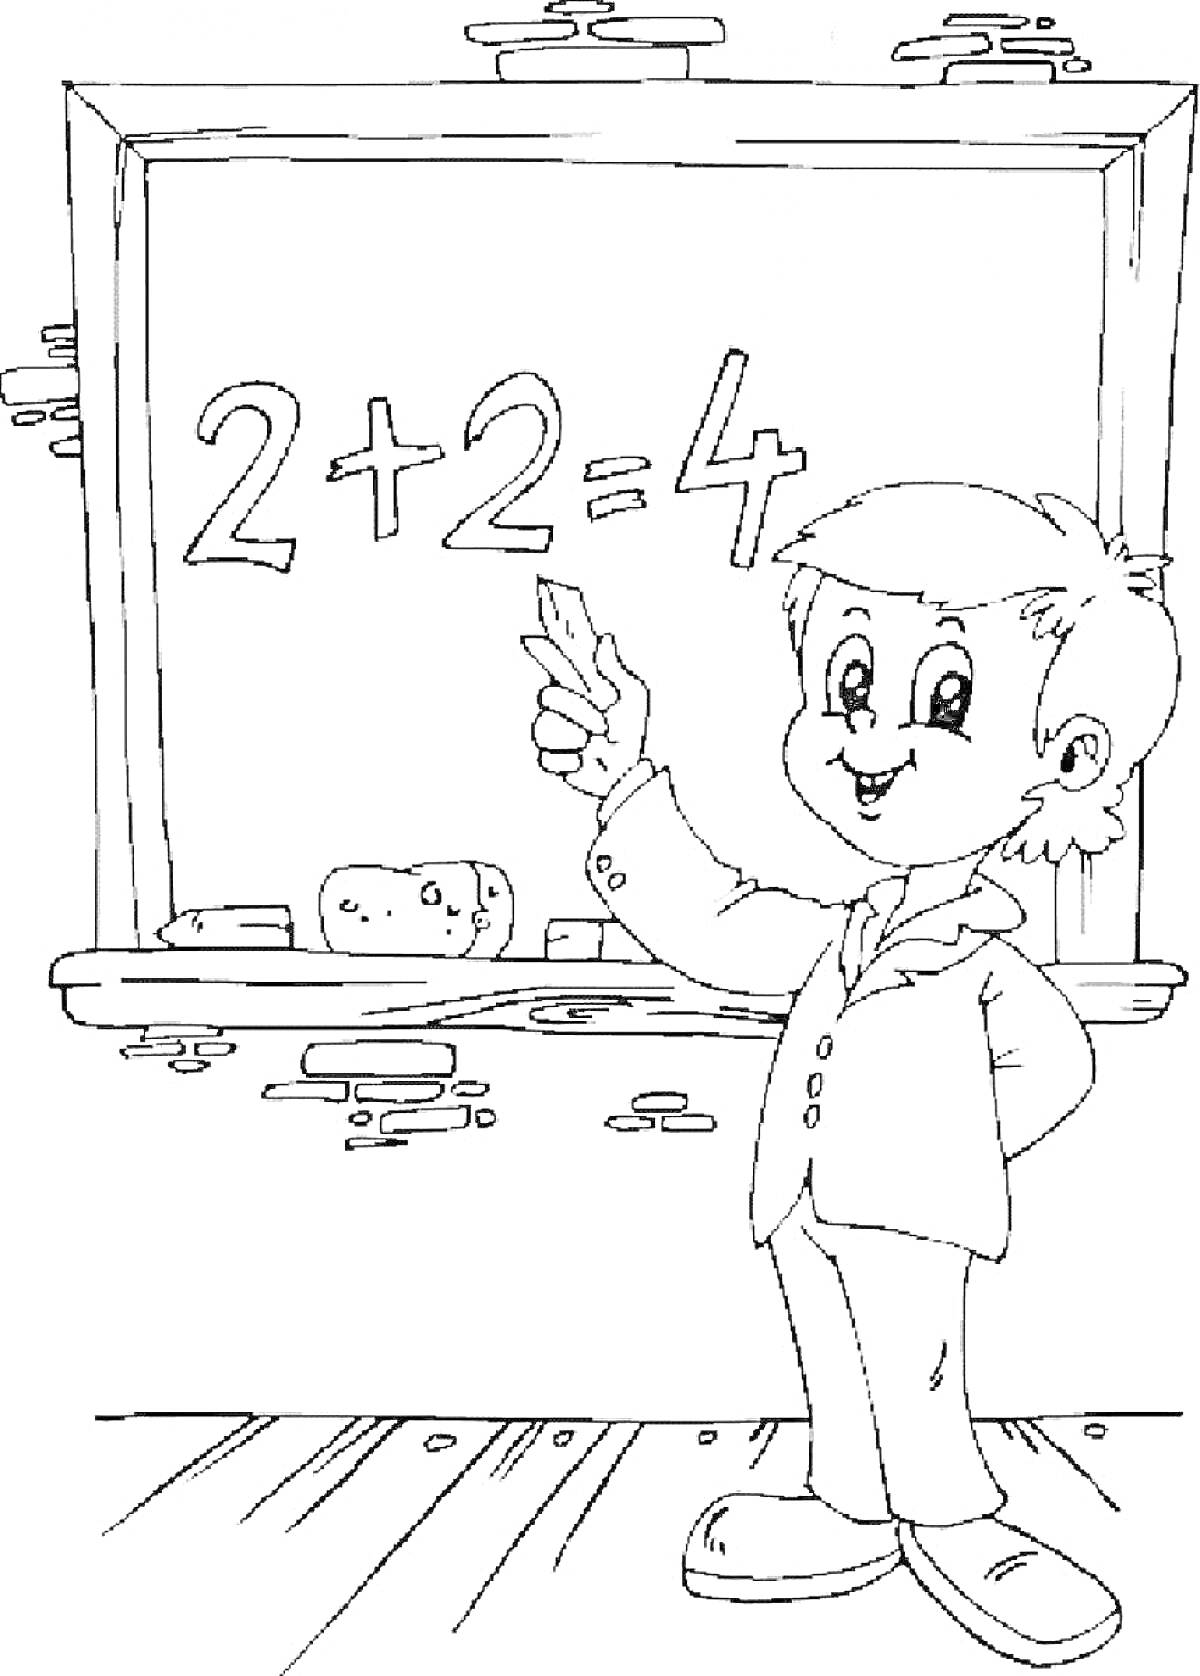 Мальчик у доски с примером 2+2=4